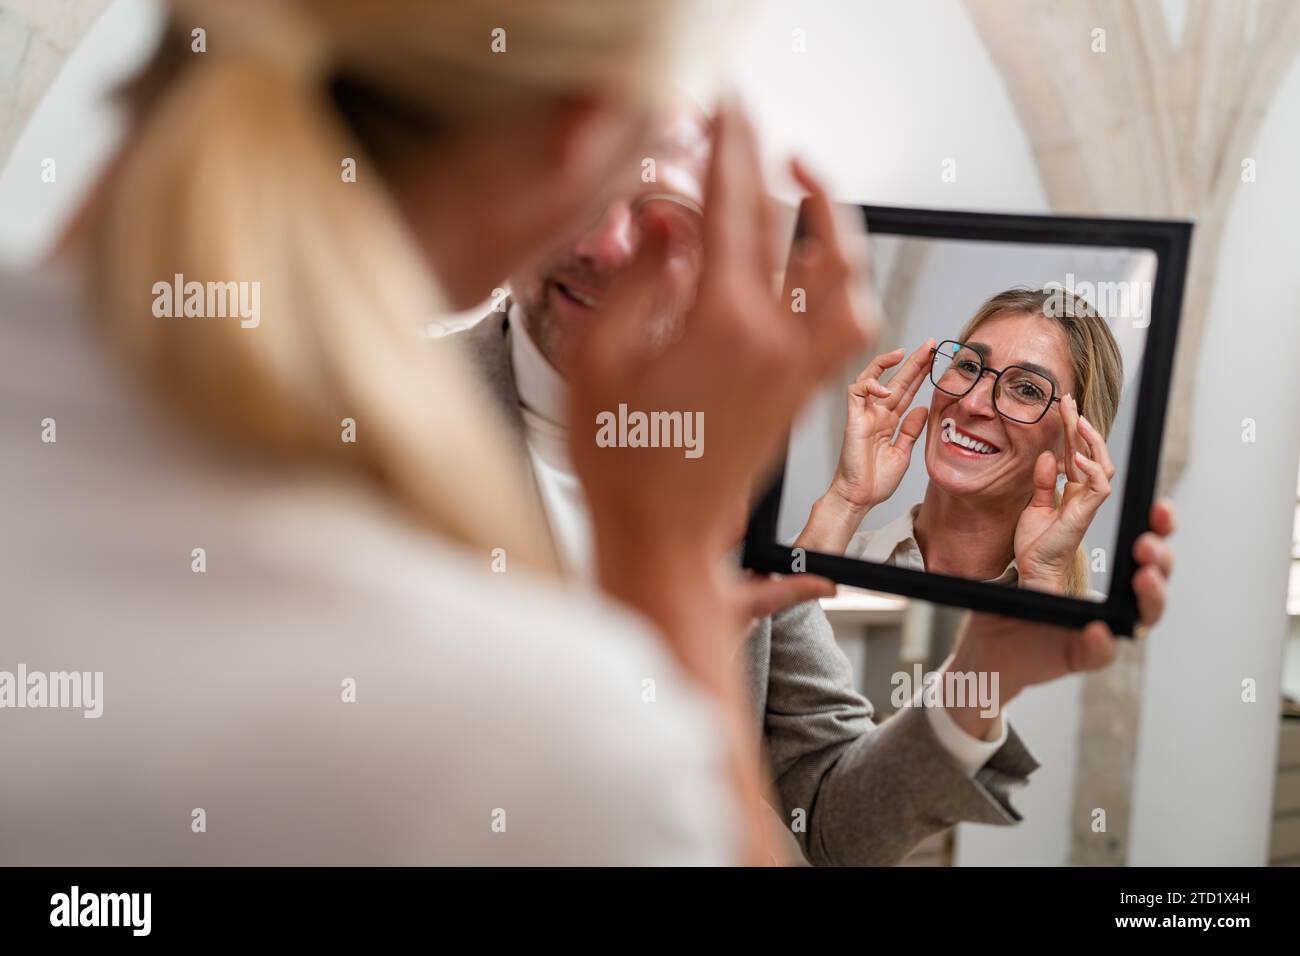 Optiker hält einen Spiegel vor einer lächelnden Frau, die in einem optischen Geschäft Brillen anprobiert. Stockfoto